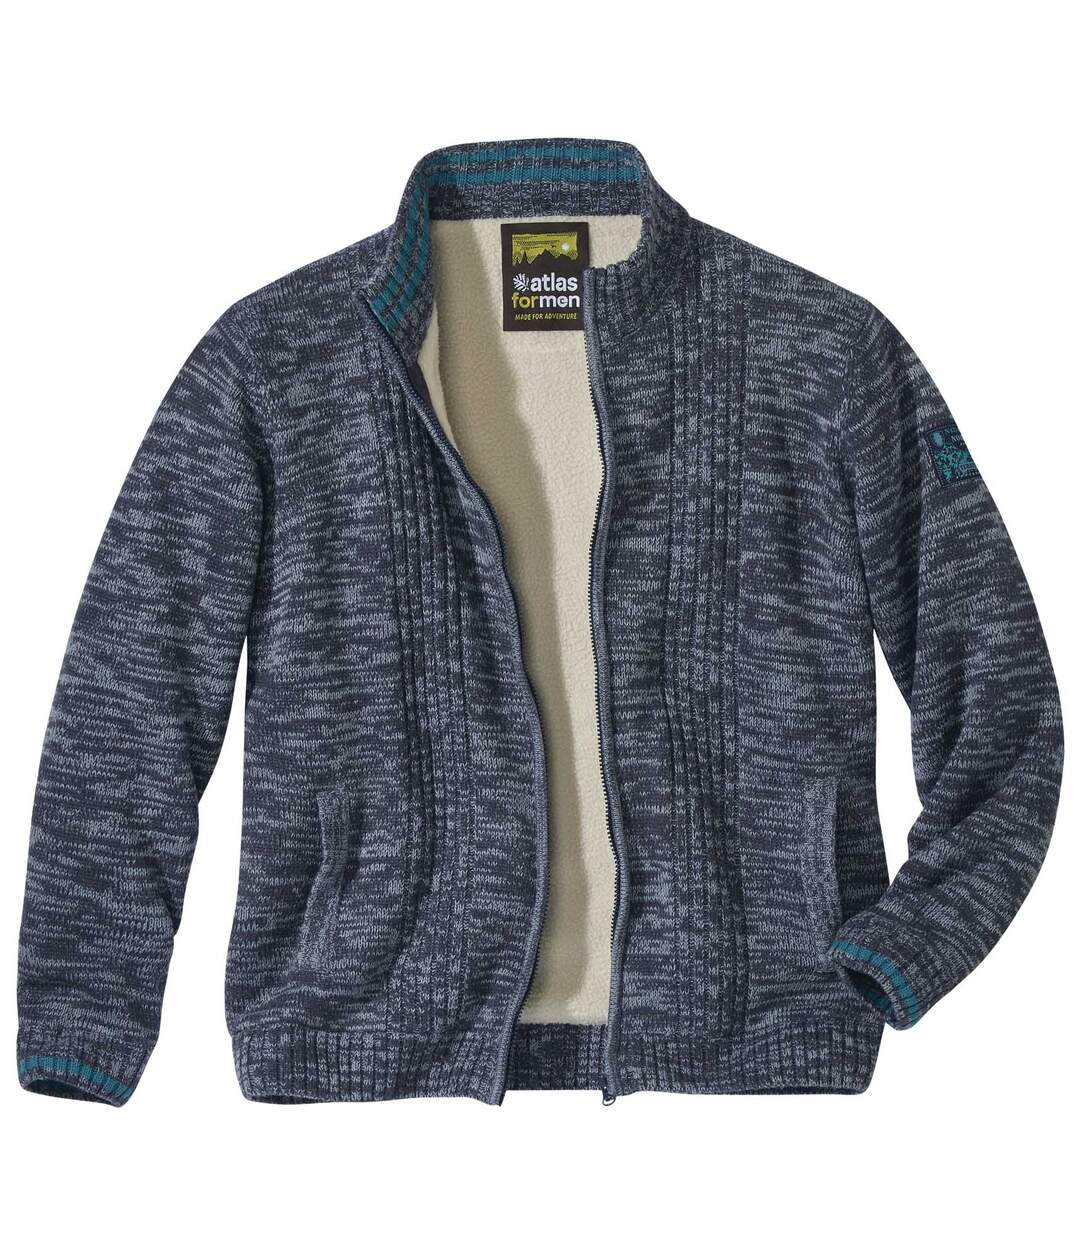 Men's Mottled Blue Knitted Jacket  Atlas For Men